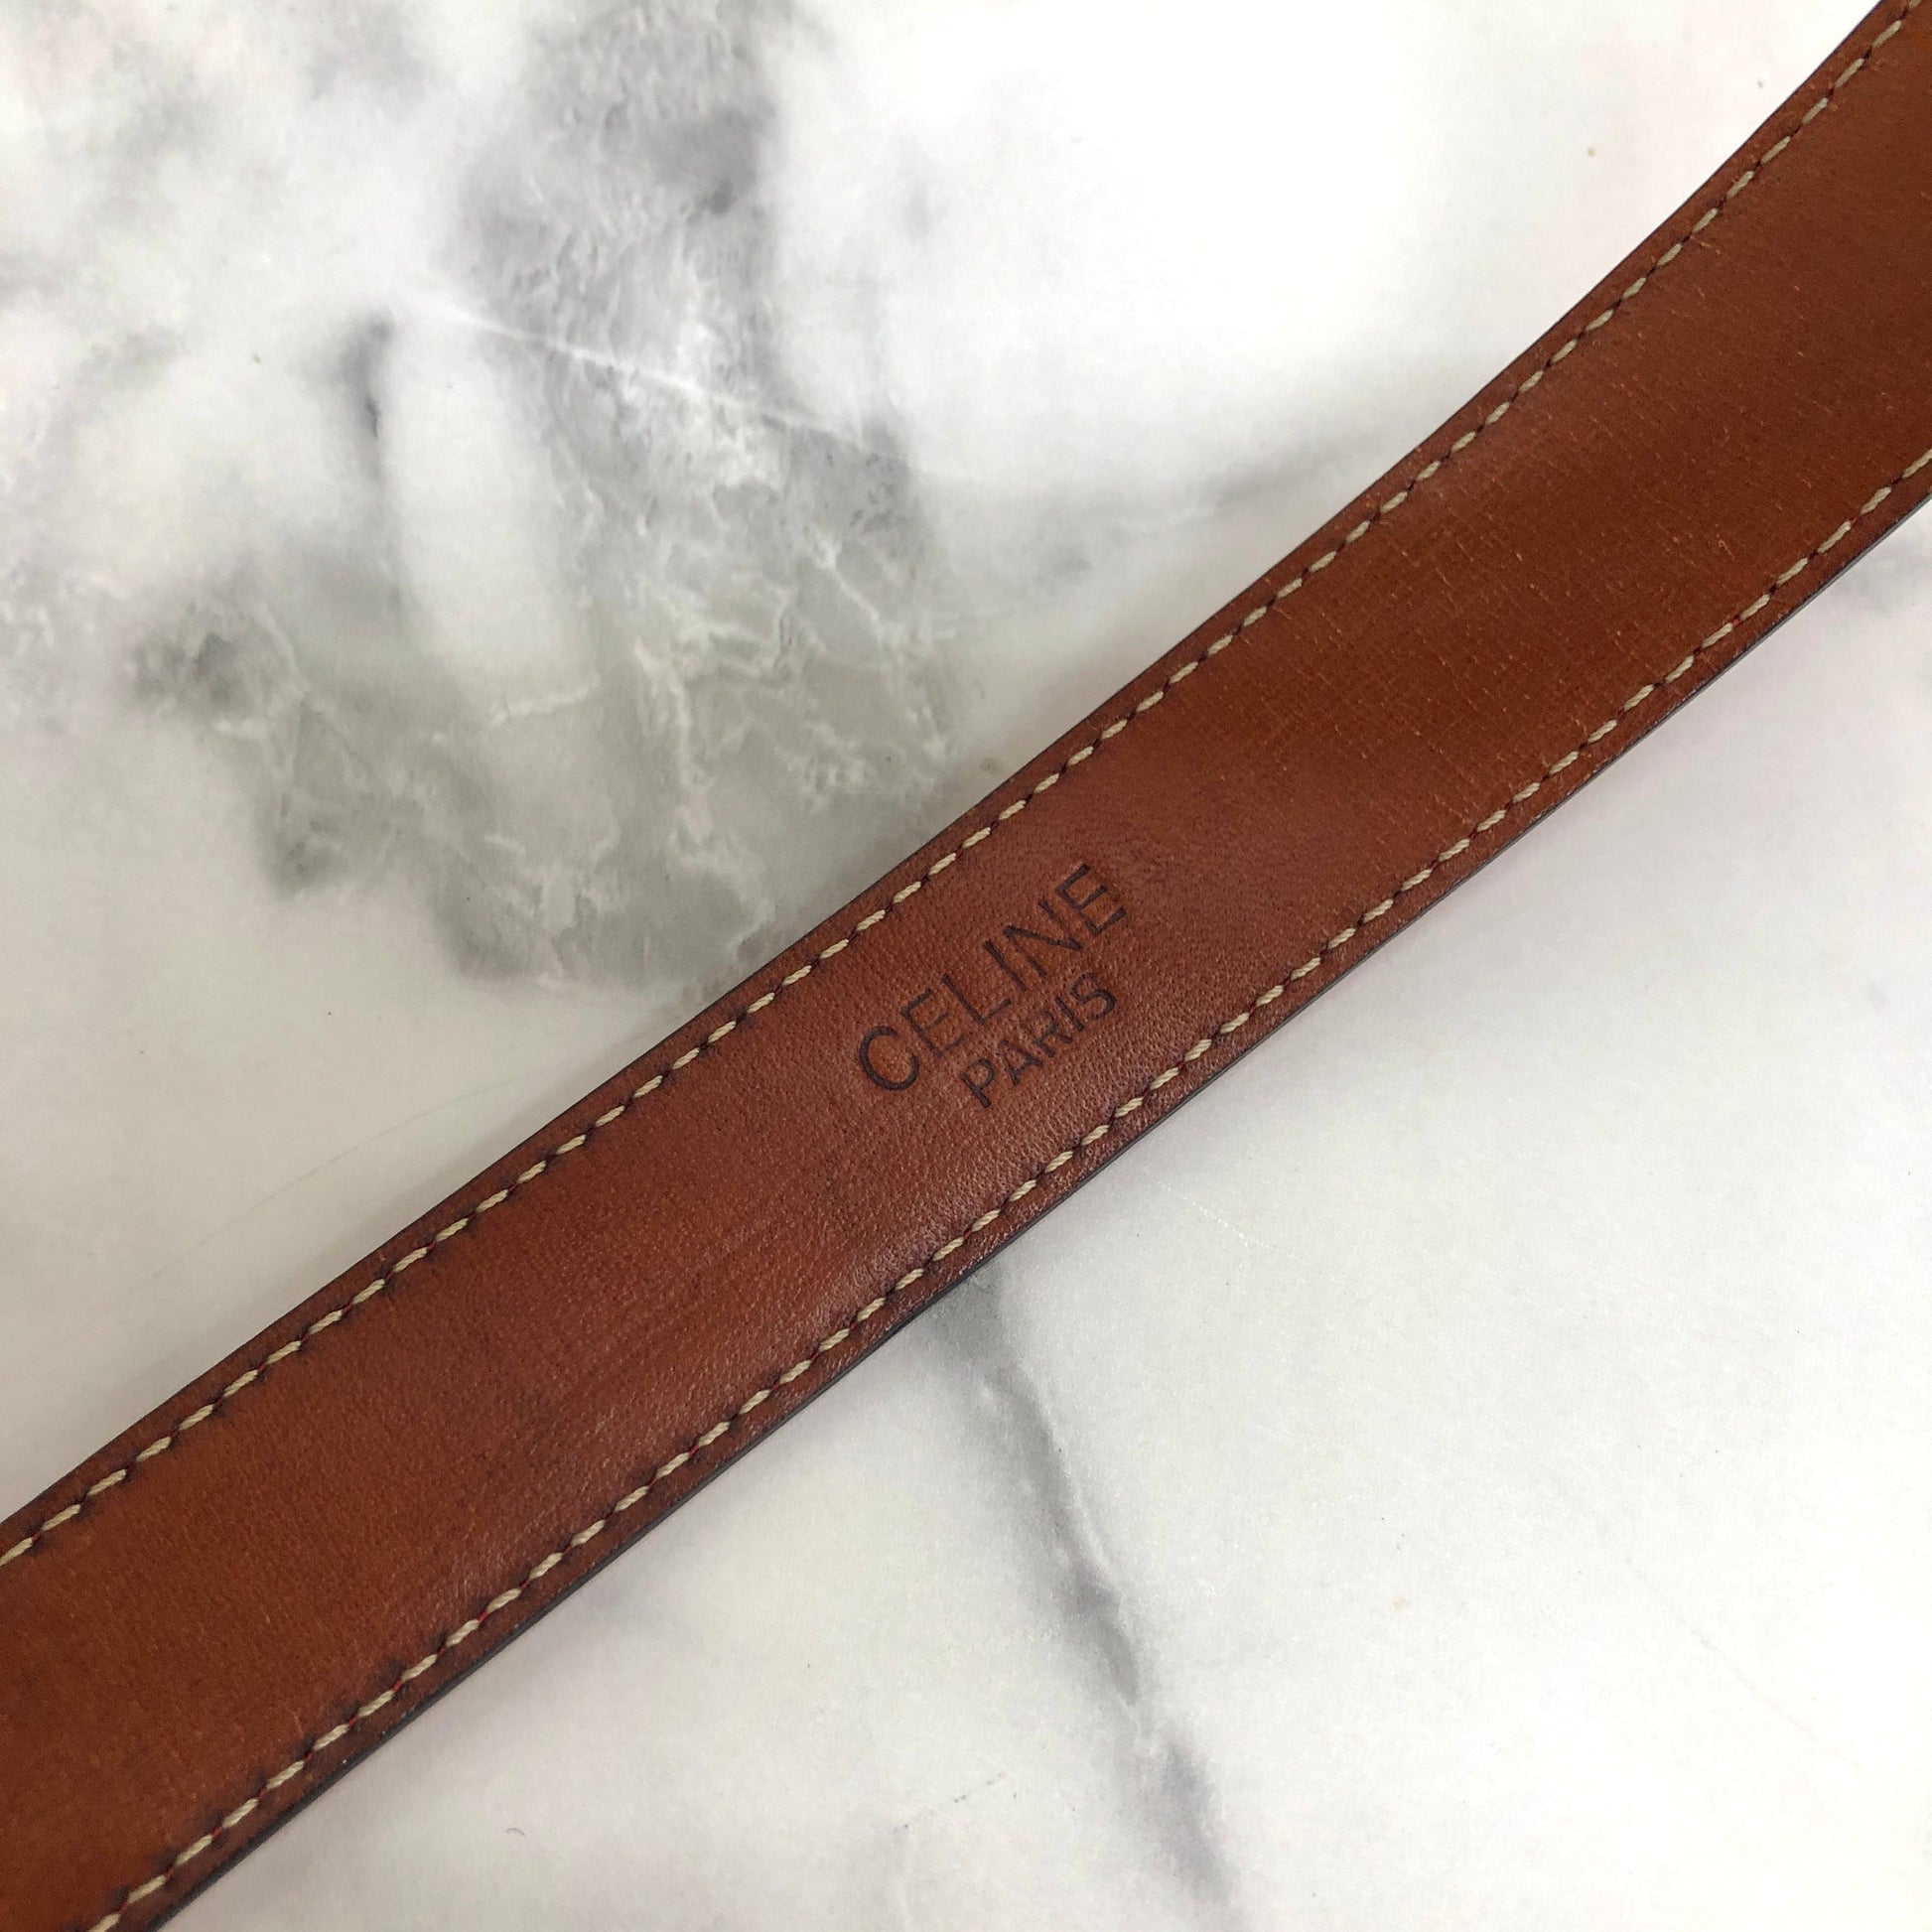 Louis Vuitton Vintage - Leather Belt - Black Silver - Leather Belt